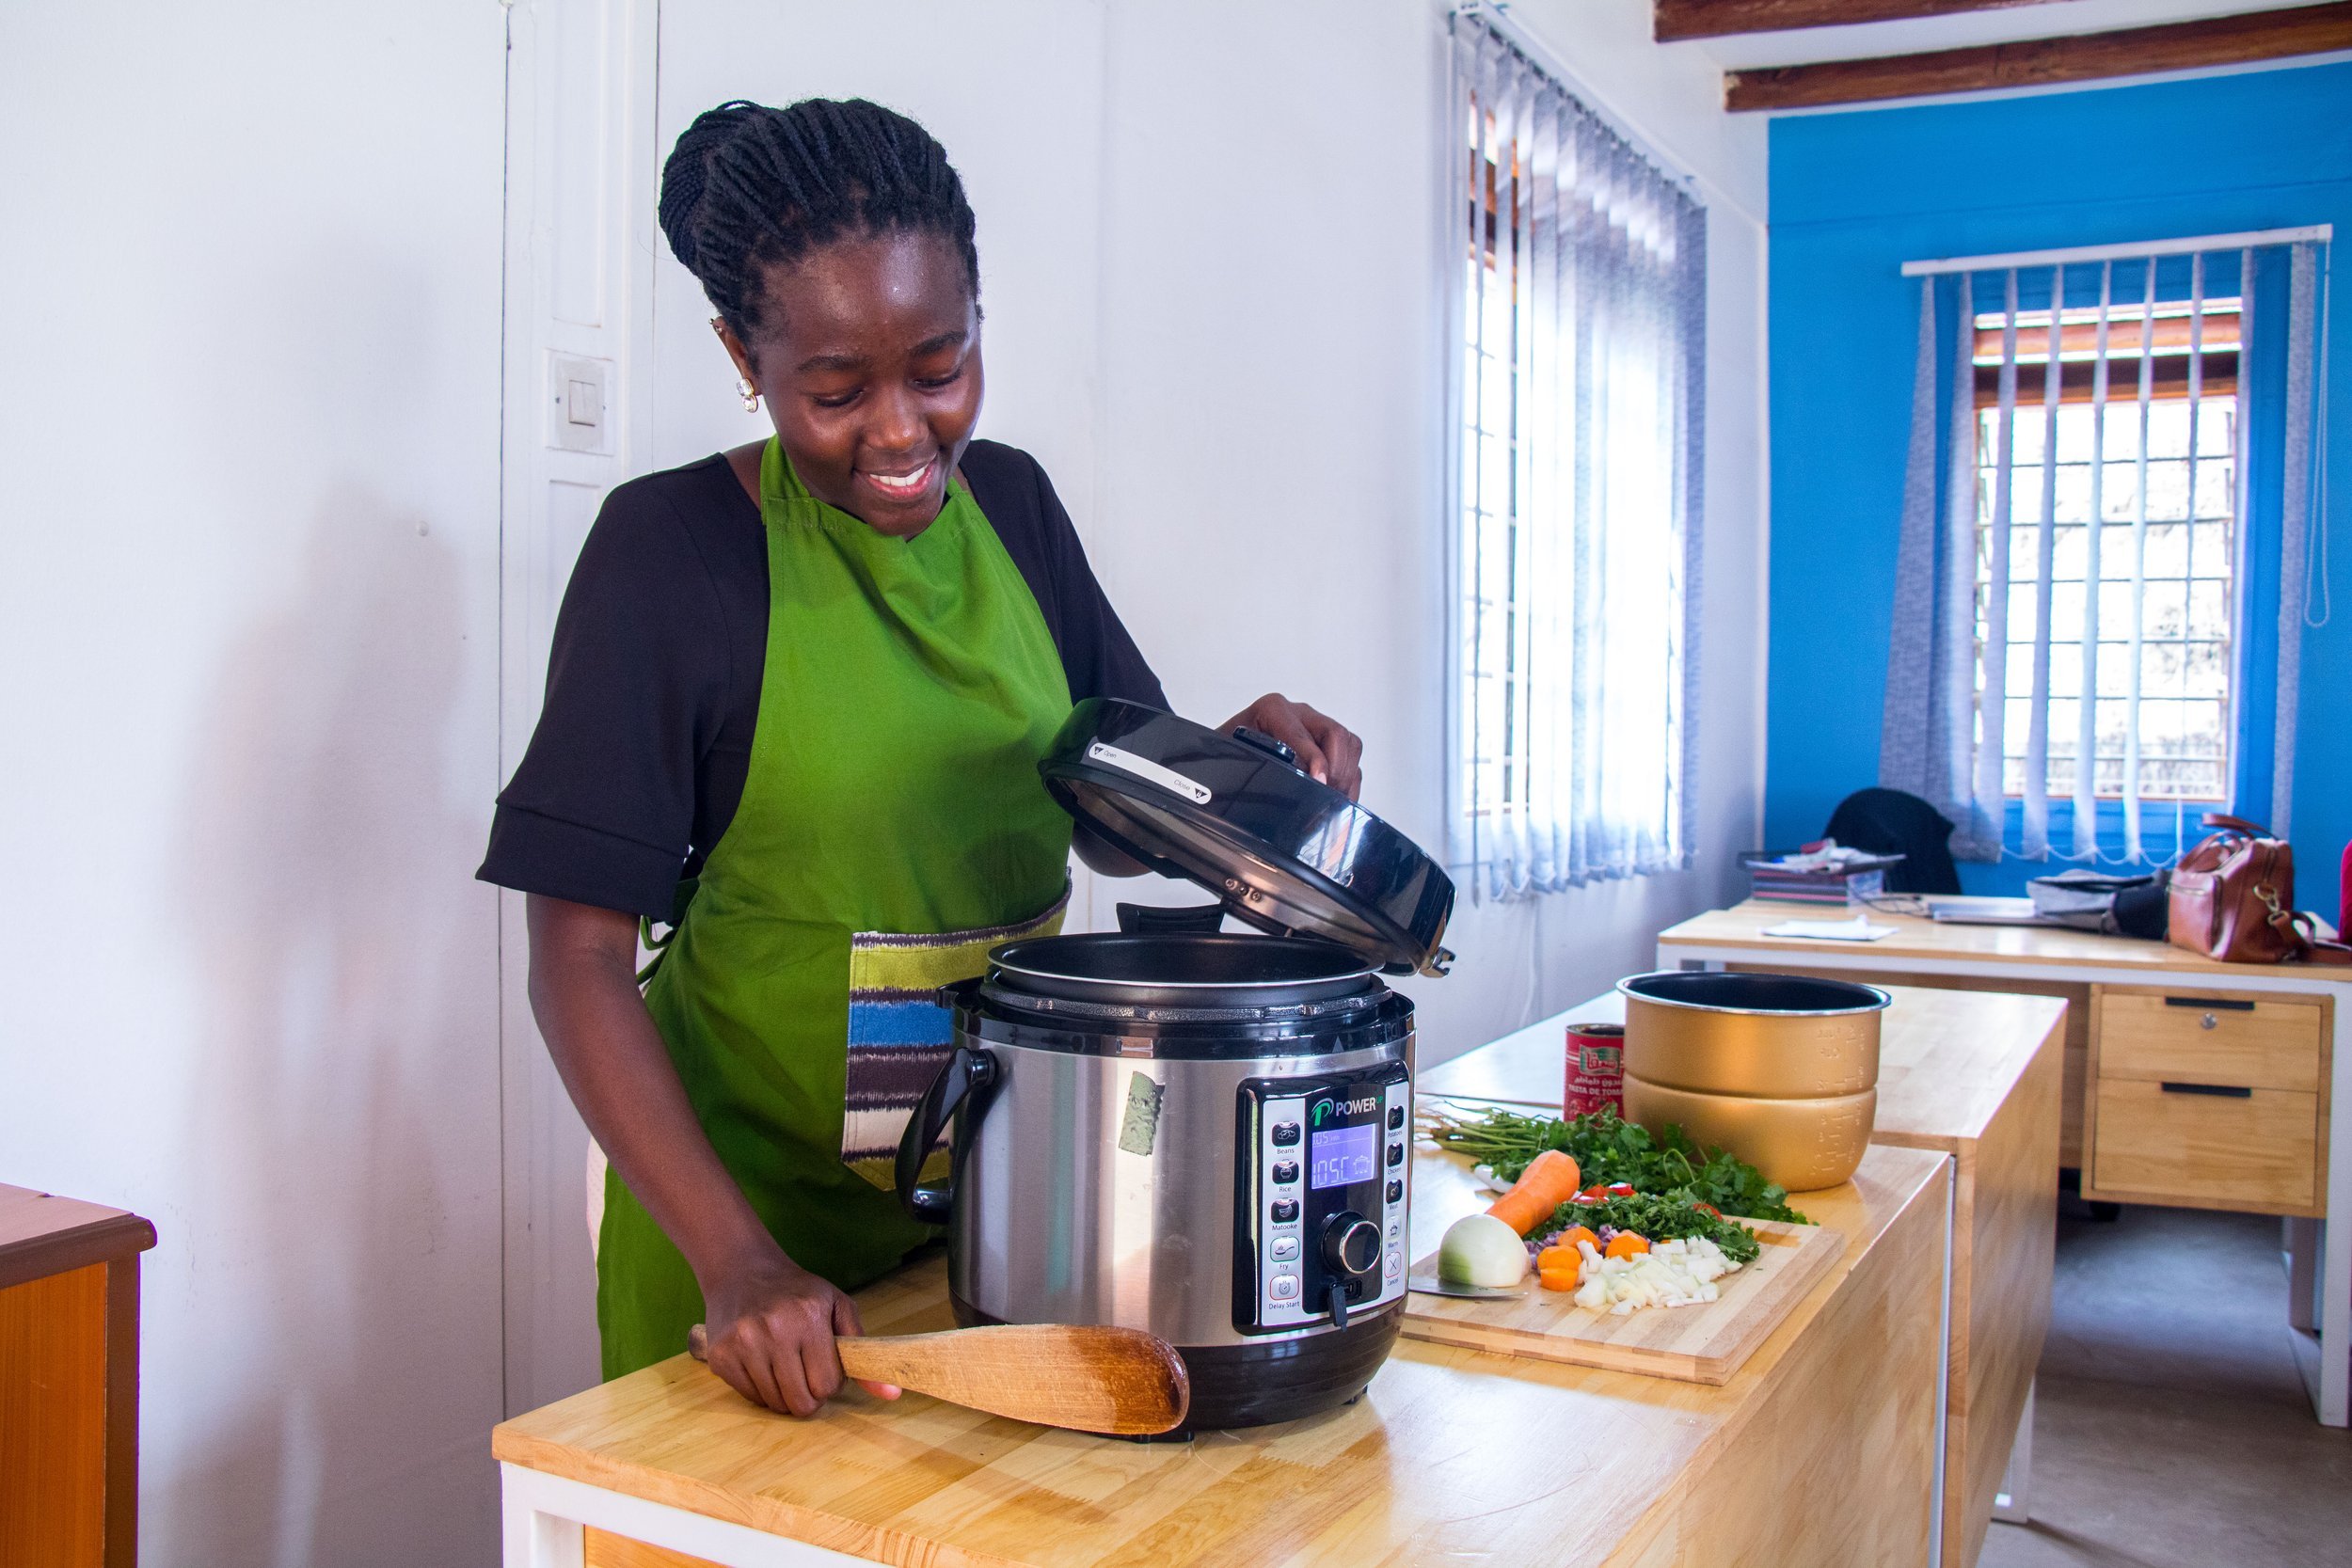 امرأة أفريقية تستعمل قدرًا كهربائية في الطهي 